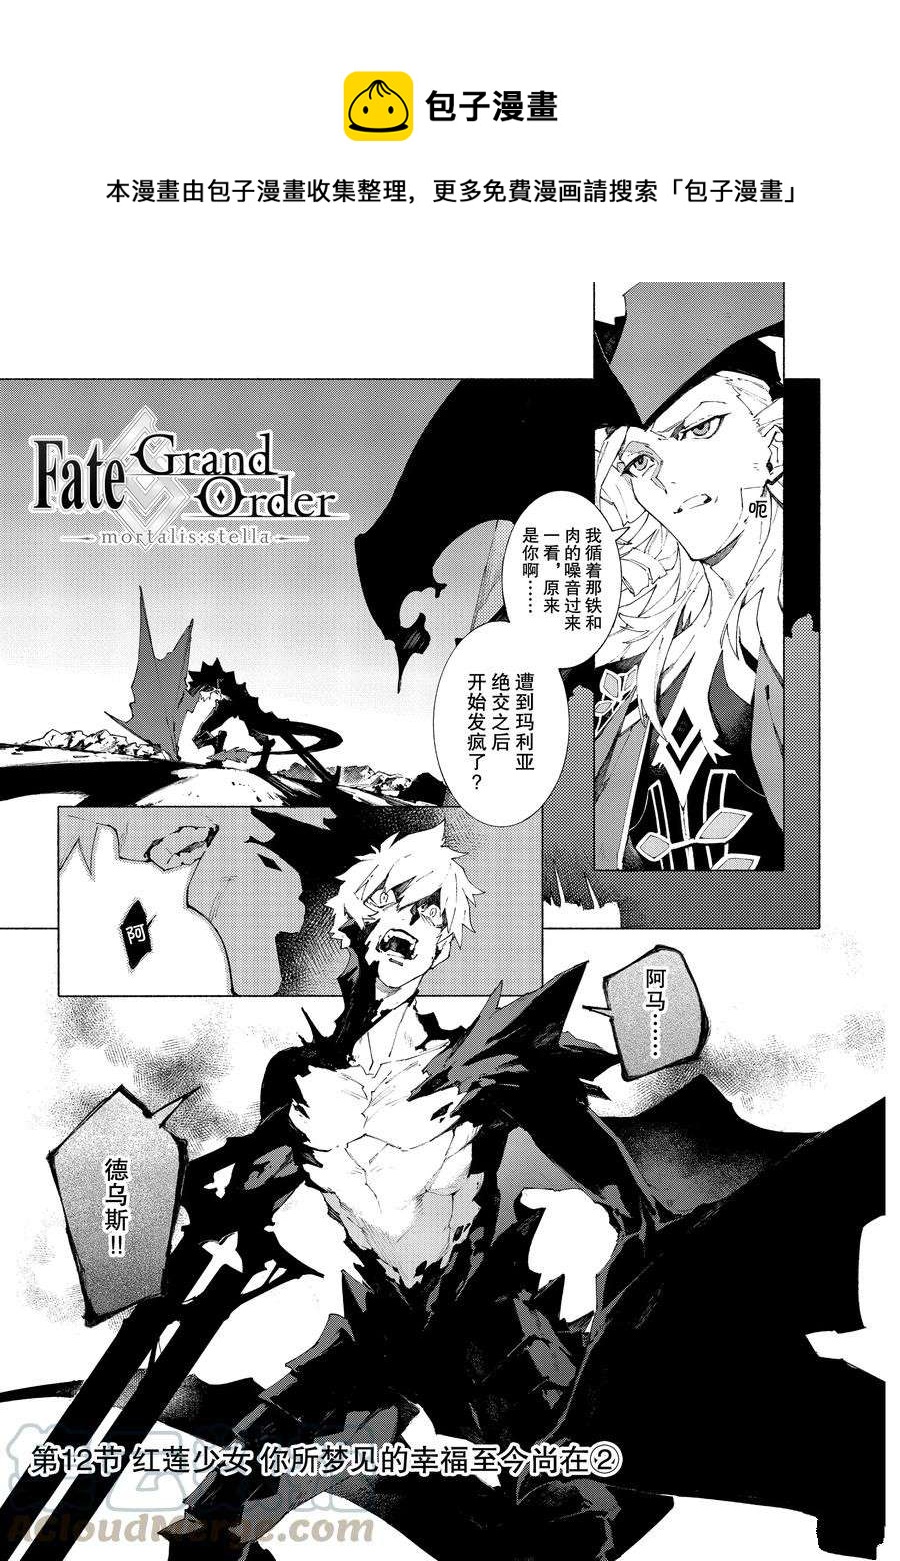 Fate Grand Order-mortalis:stella - 第12.2话 - 1